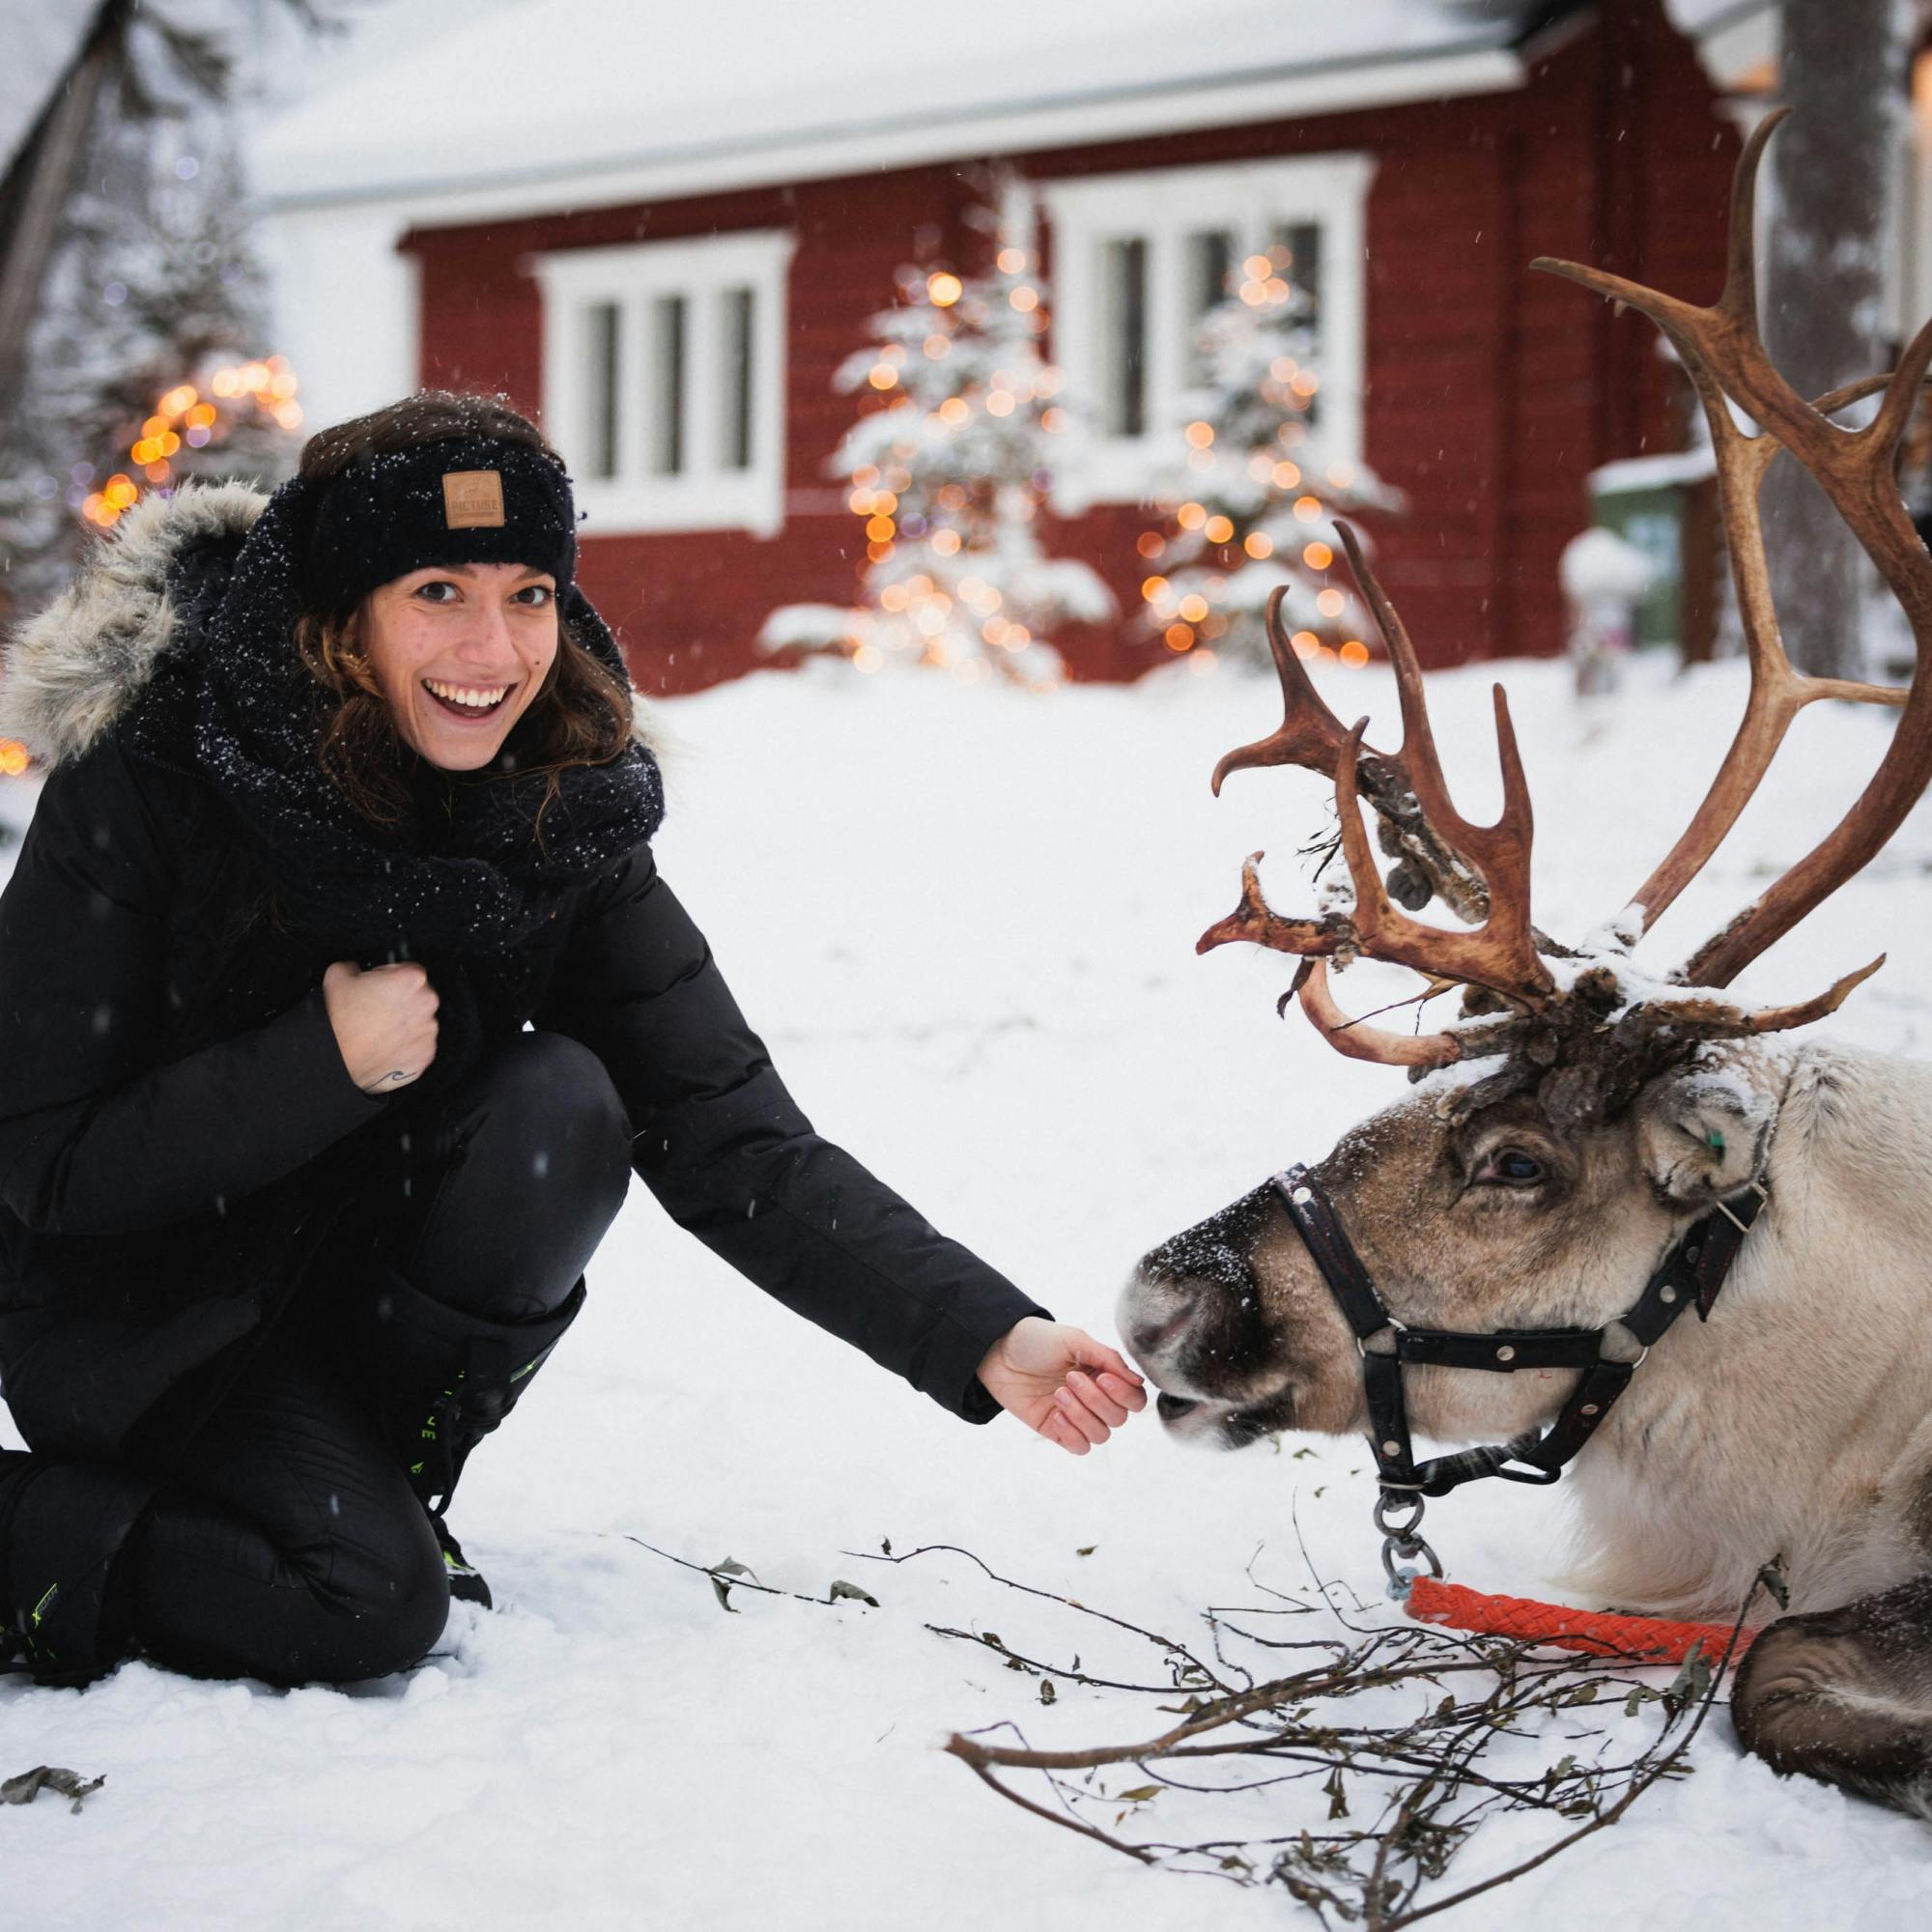 Familientag mit Schneemobilen, arktischen Tieren und Santa Village